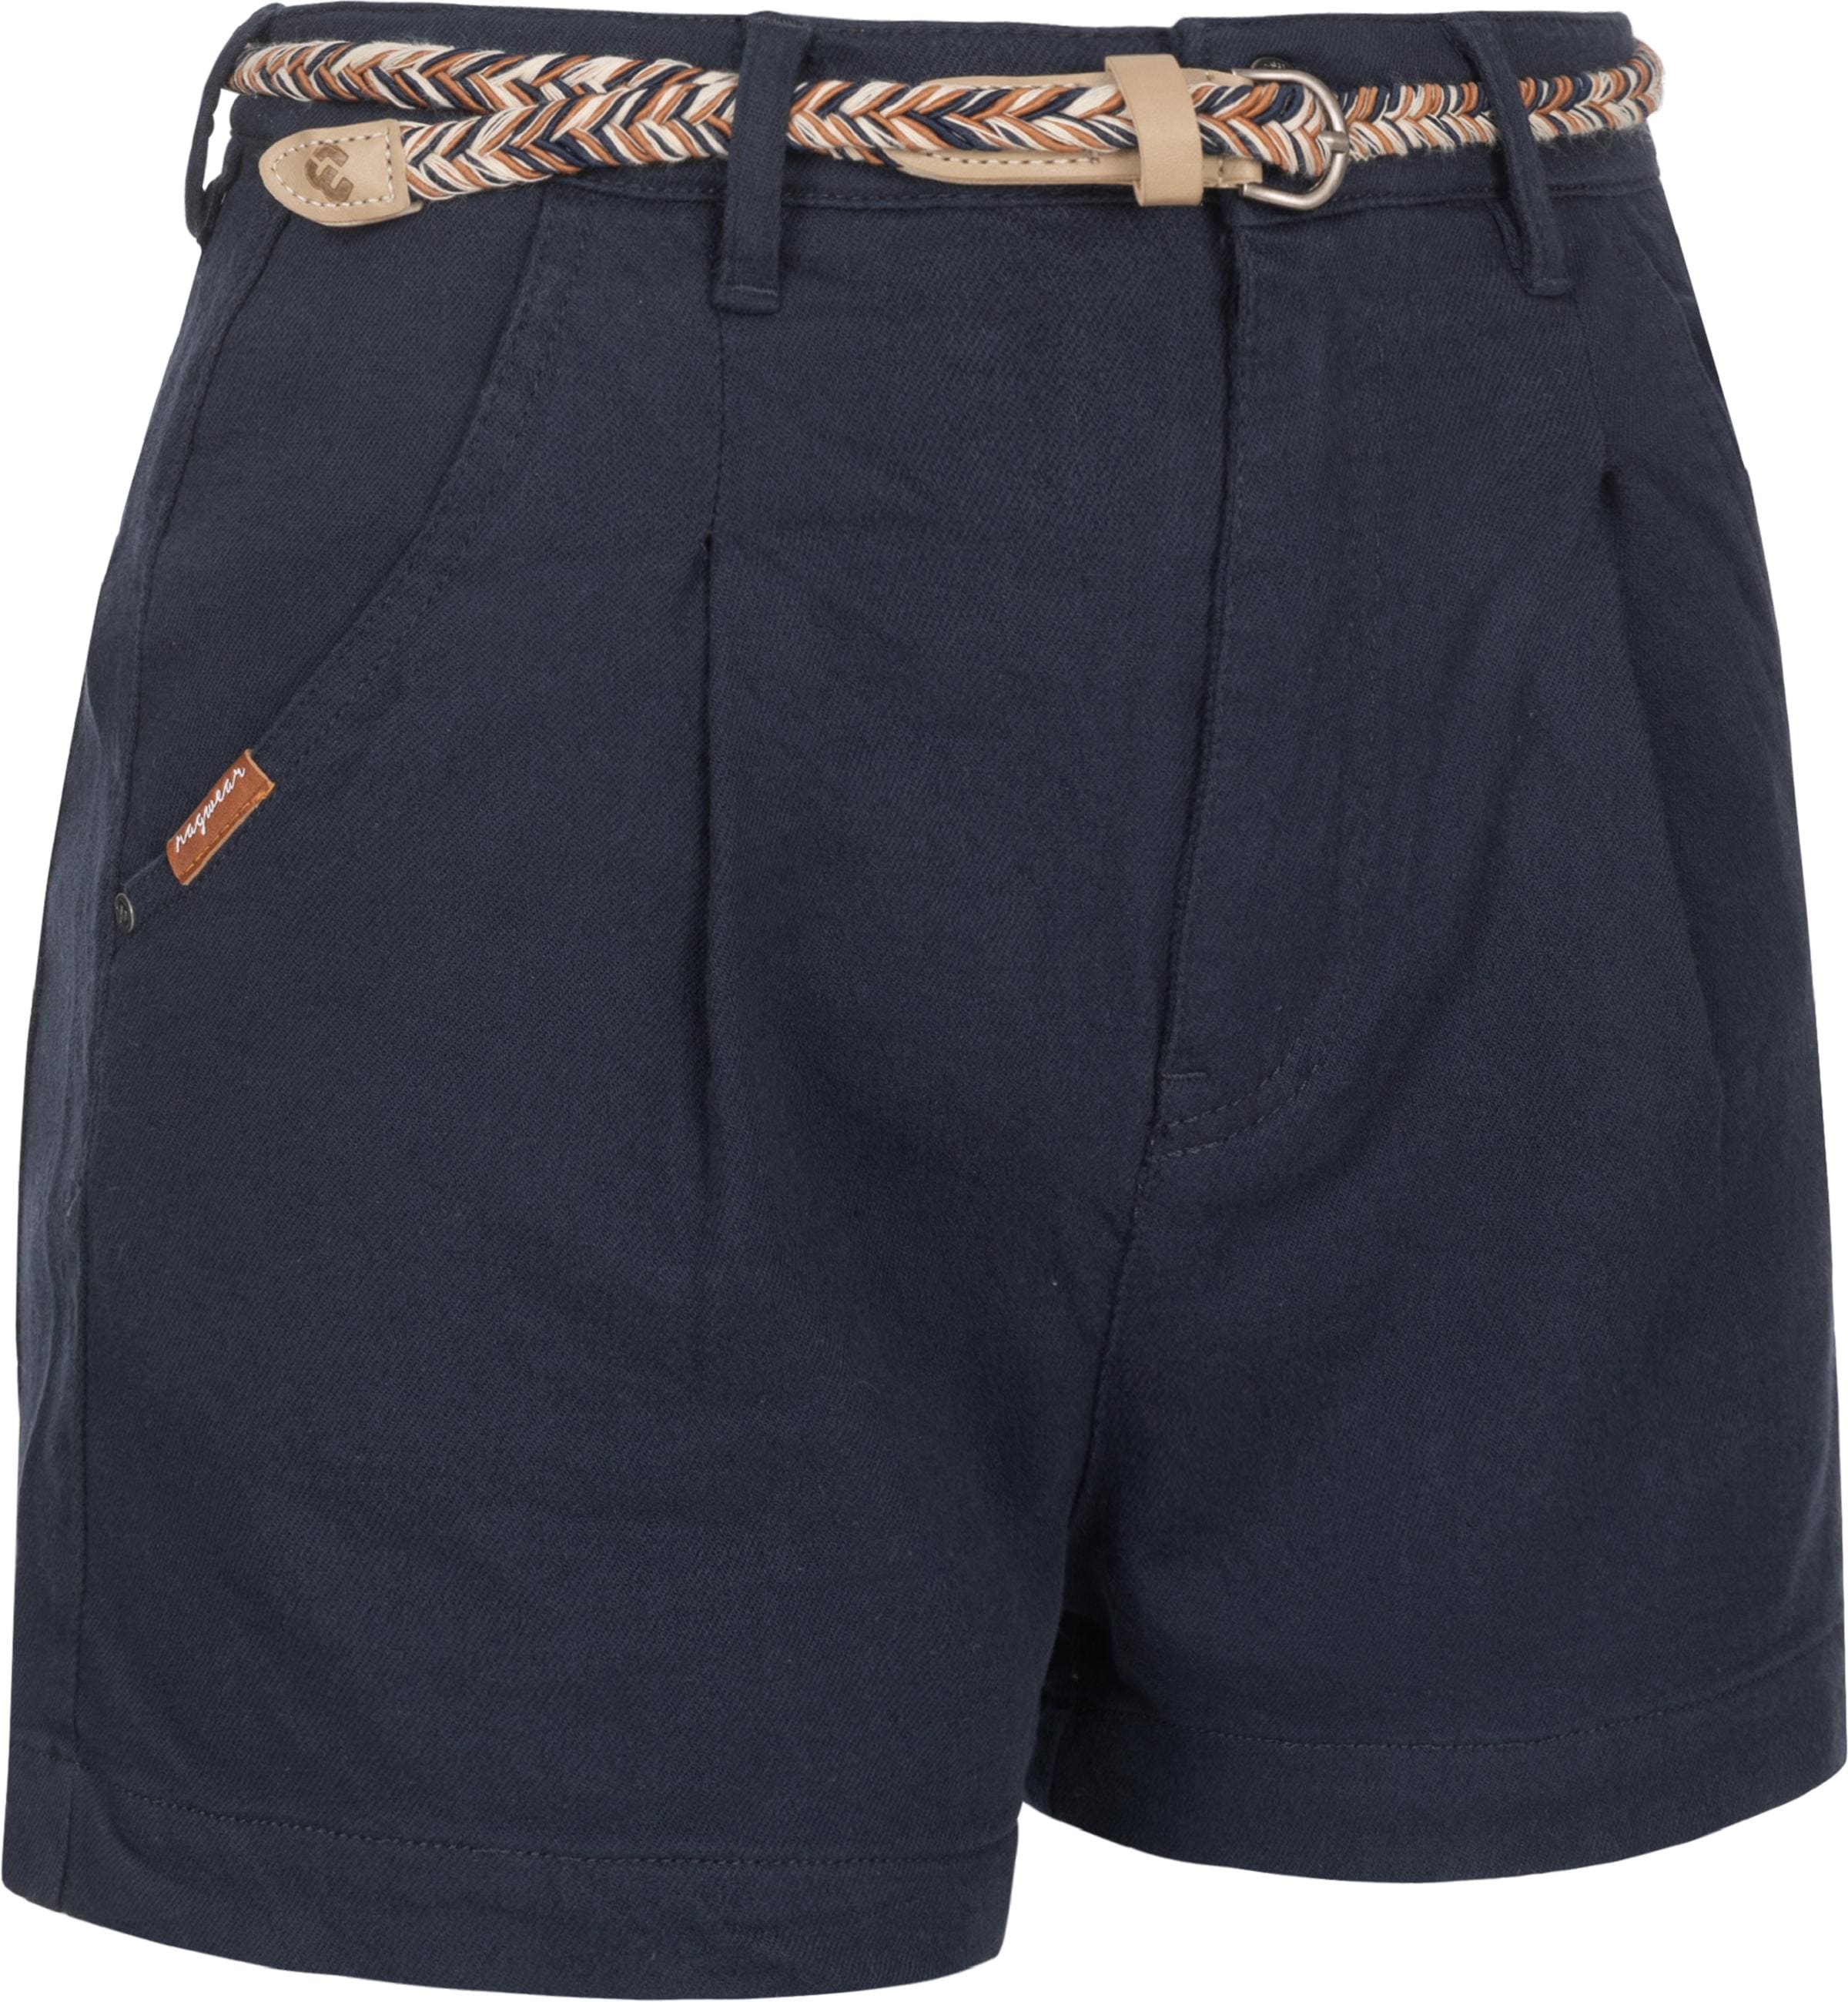 Chinoshorts Ragwear kaufen »Shorts Sorenn OTTO online Intl.« bei